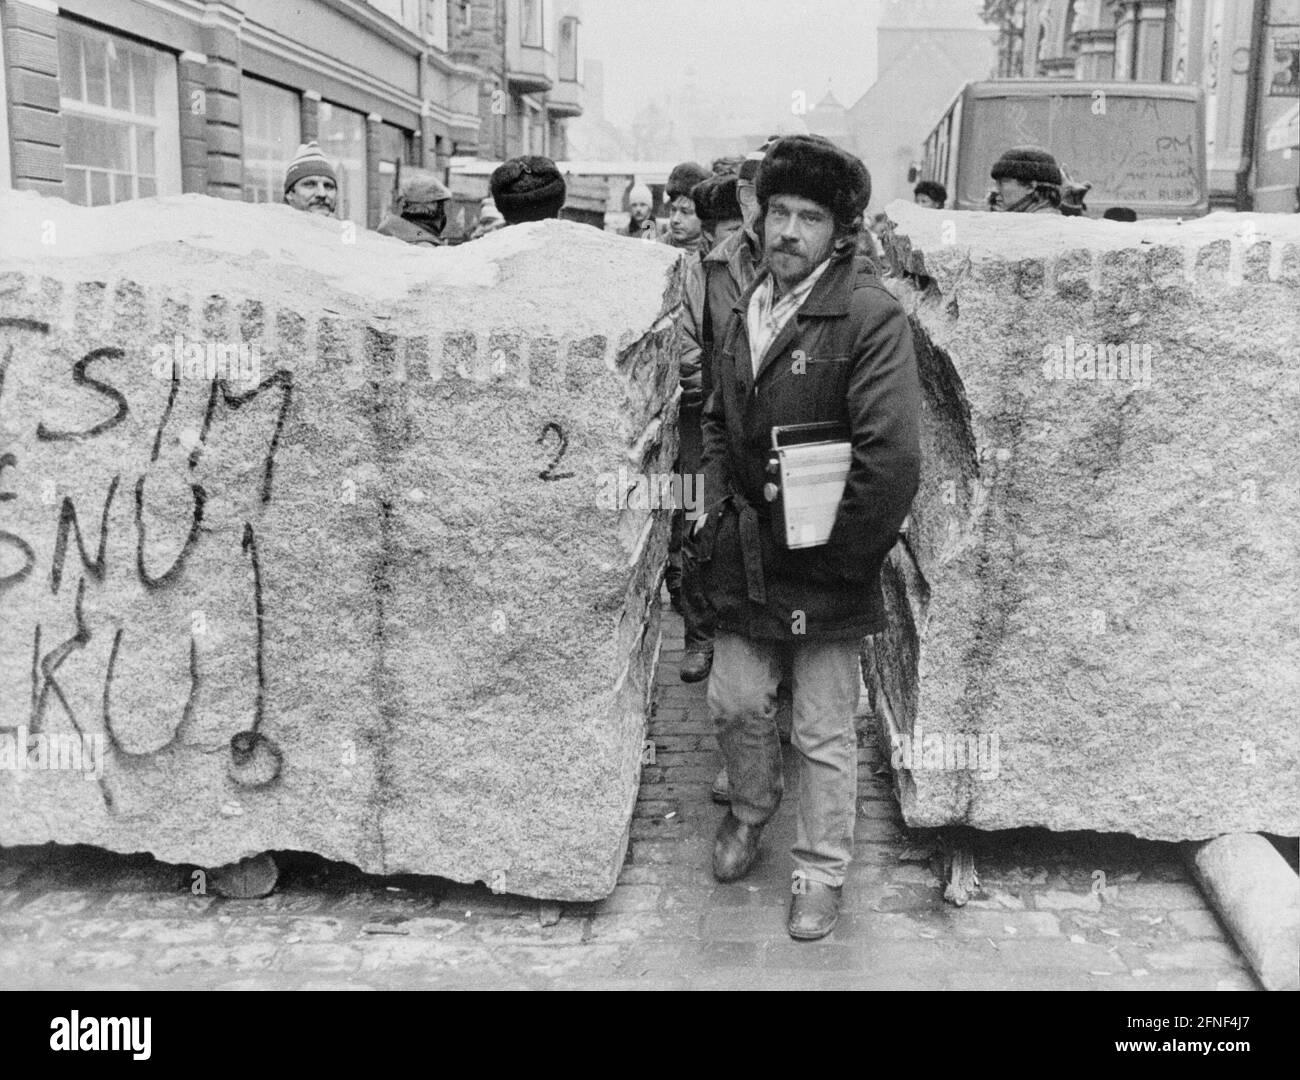 Une barricade de blocs de pierre est érigée devant le Parlement letton à Riga pour protéger contre une éventuelle occupation par les troupes soviétiques. [traduction automatique] Banque D'Images